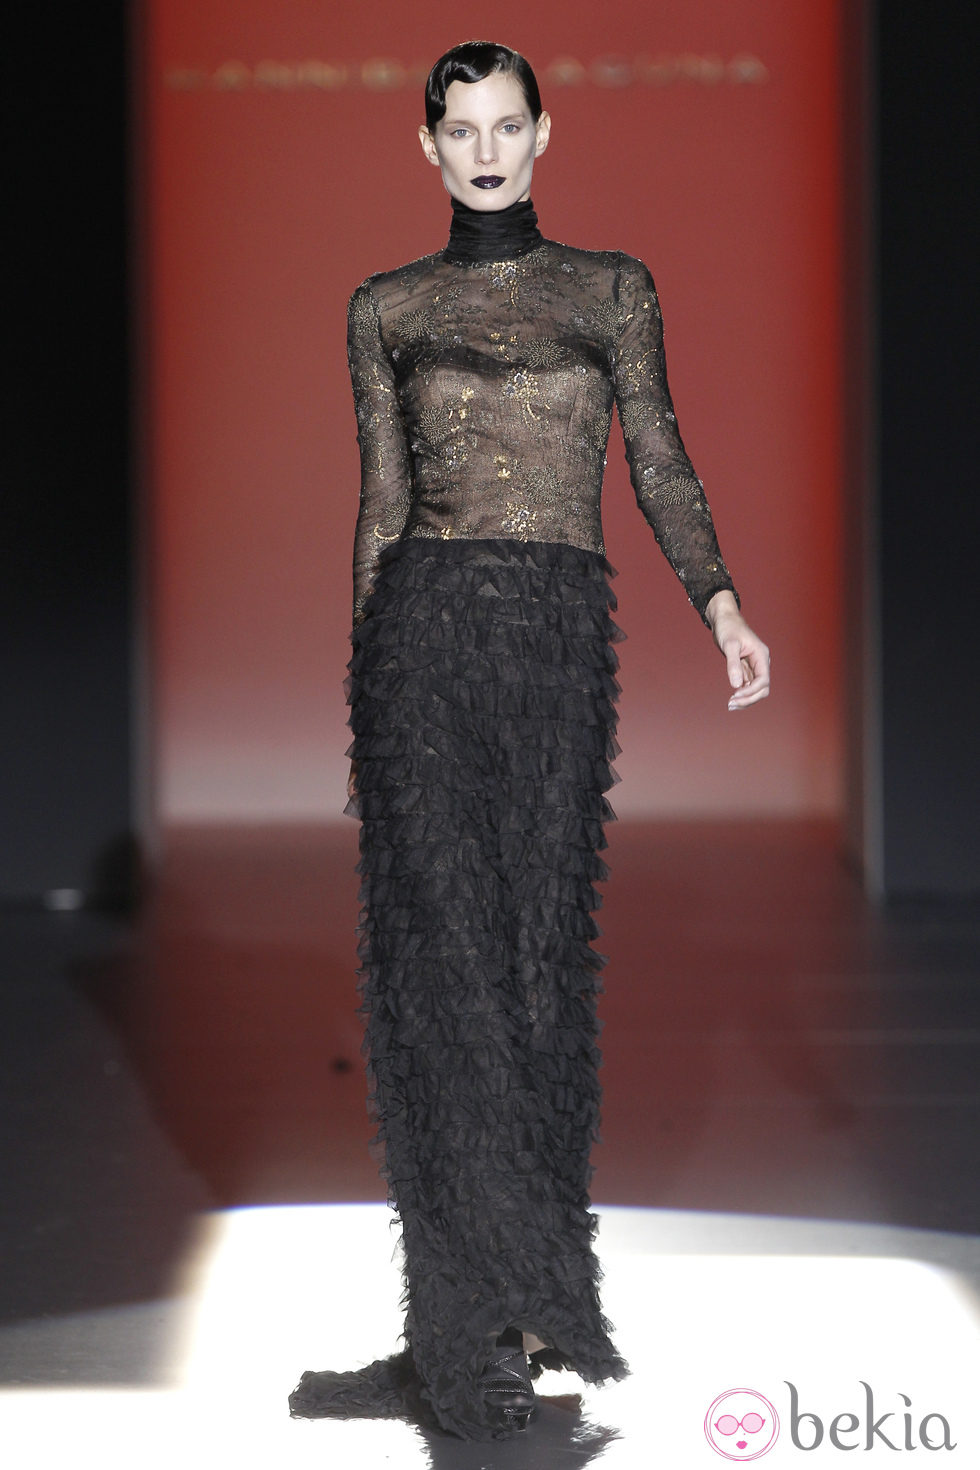 Vestido negro con encaje y volantes de Hannibal Laguna en Fashion Week Madrid